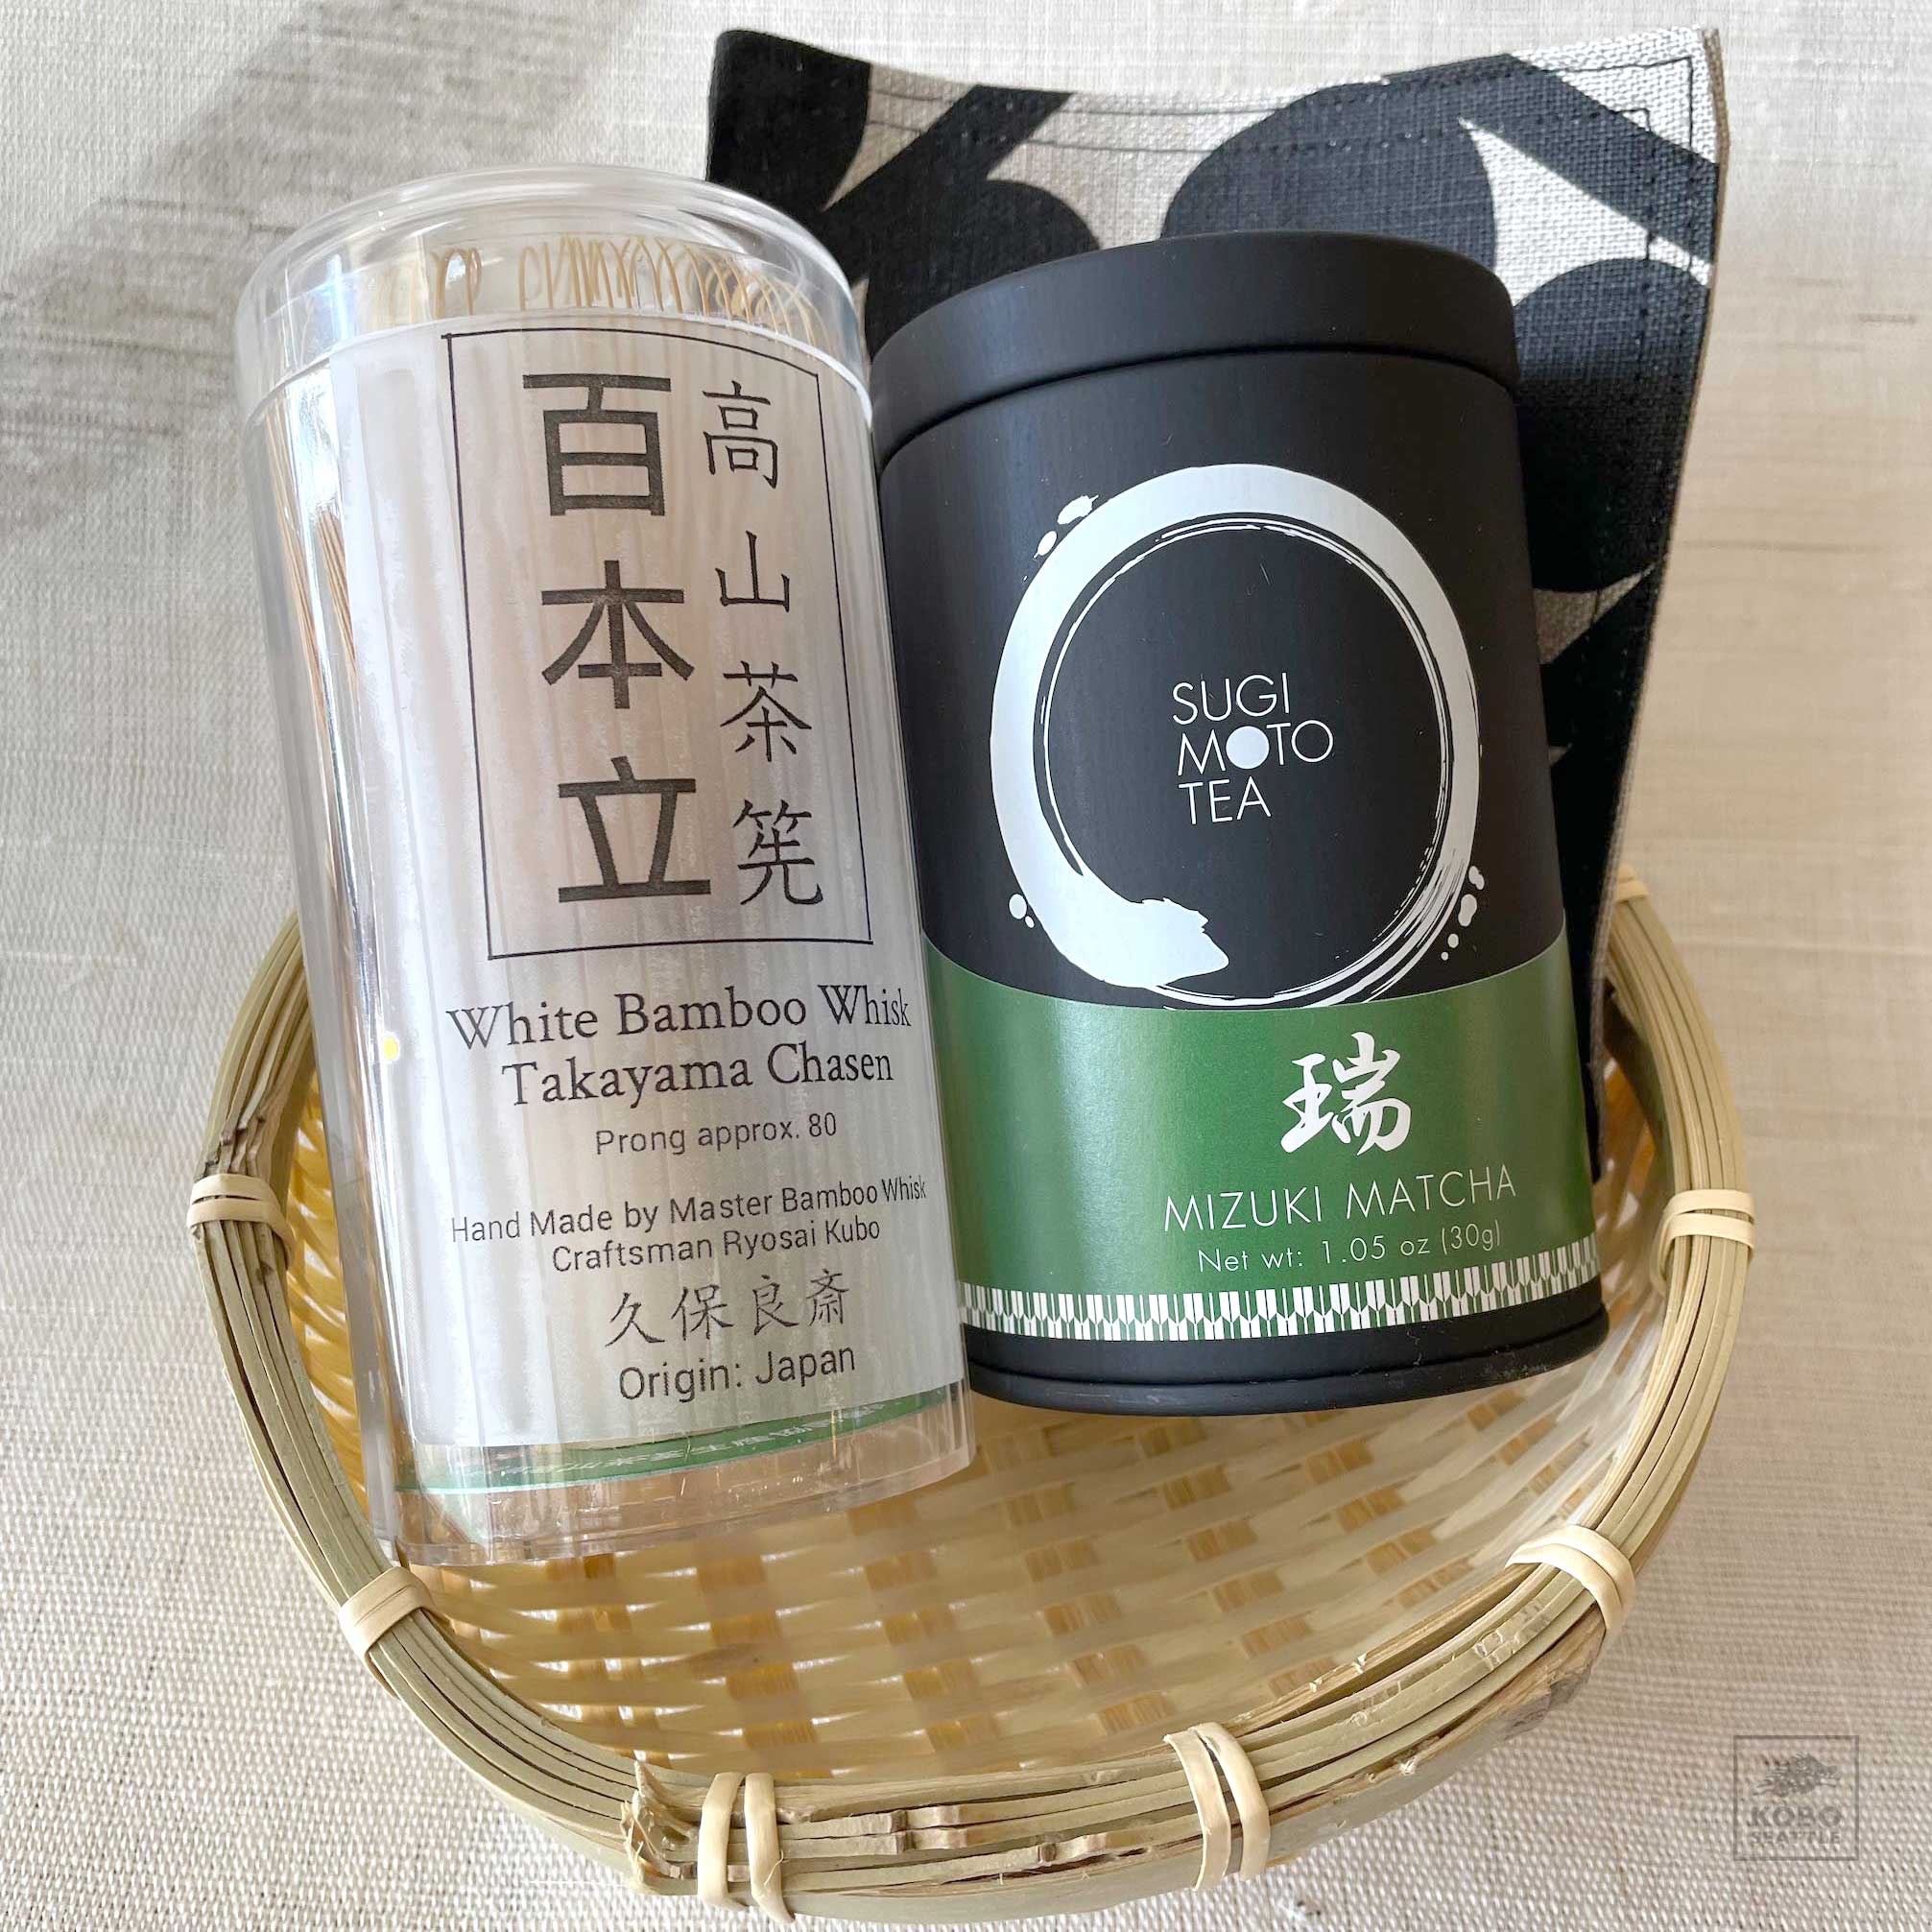 japanese green tea brands